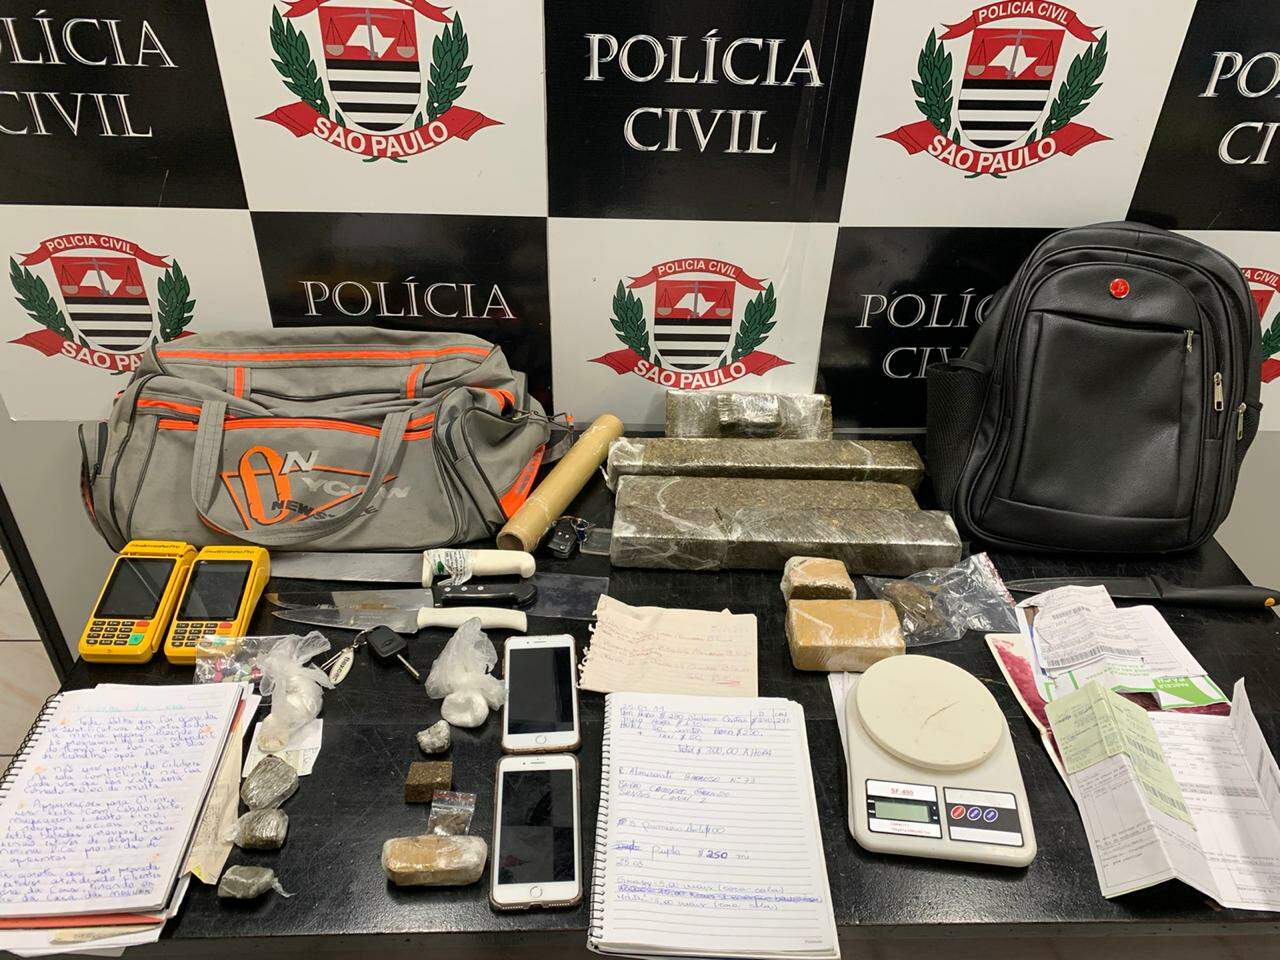 Drogas, balança de precisão, aparelhos celulares e anotações apreendidos pela Polícia